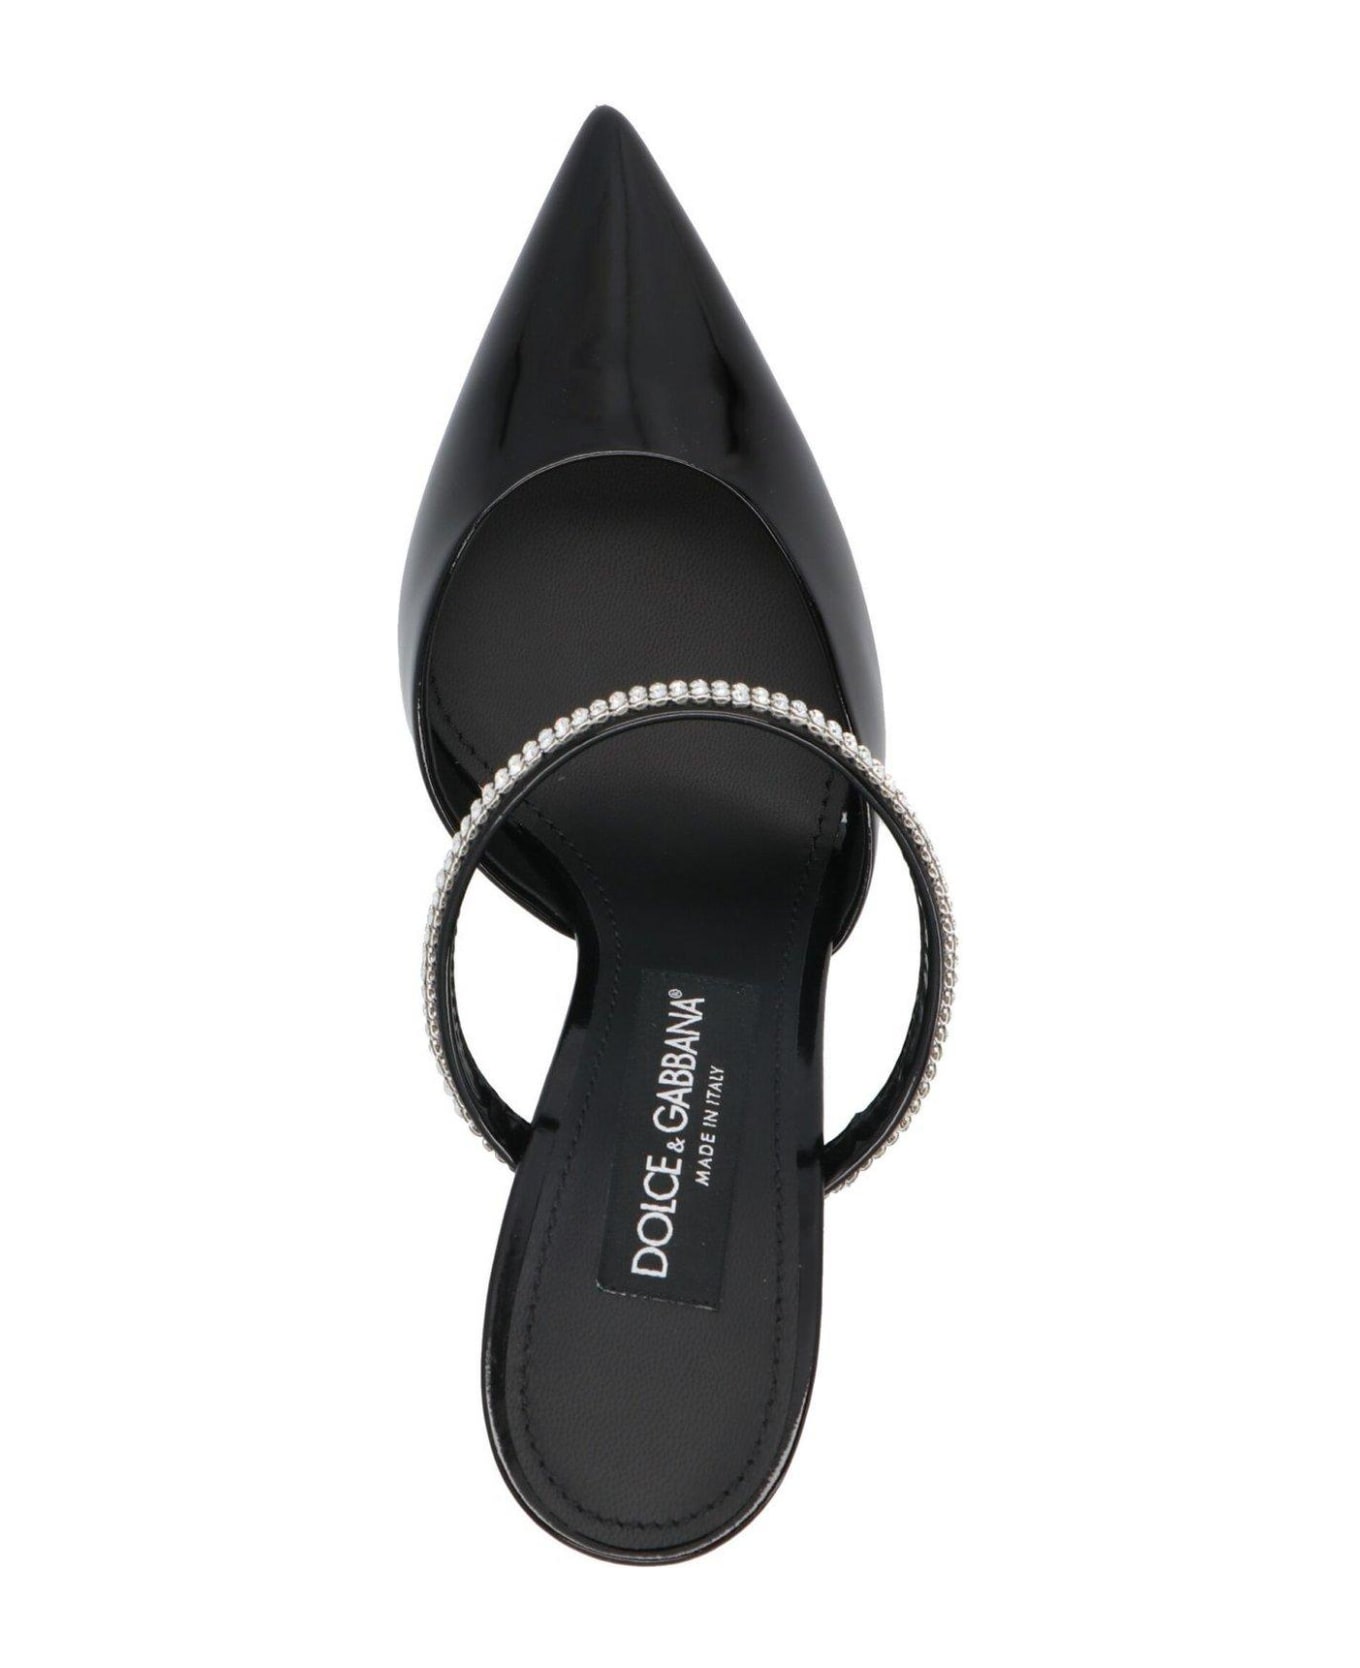 Dolce & Gabbana Embellished Pointed Toe Mules - Nero